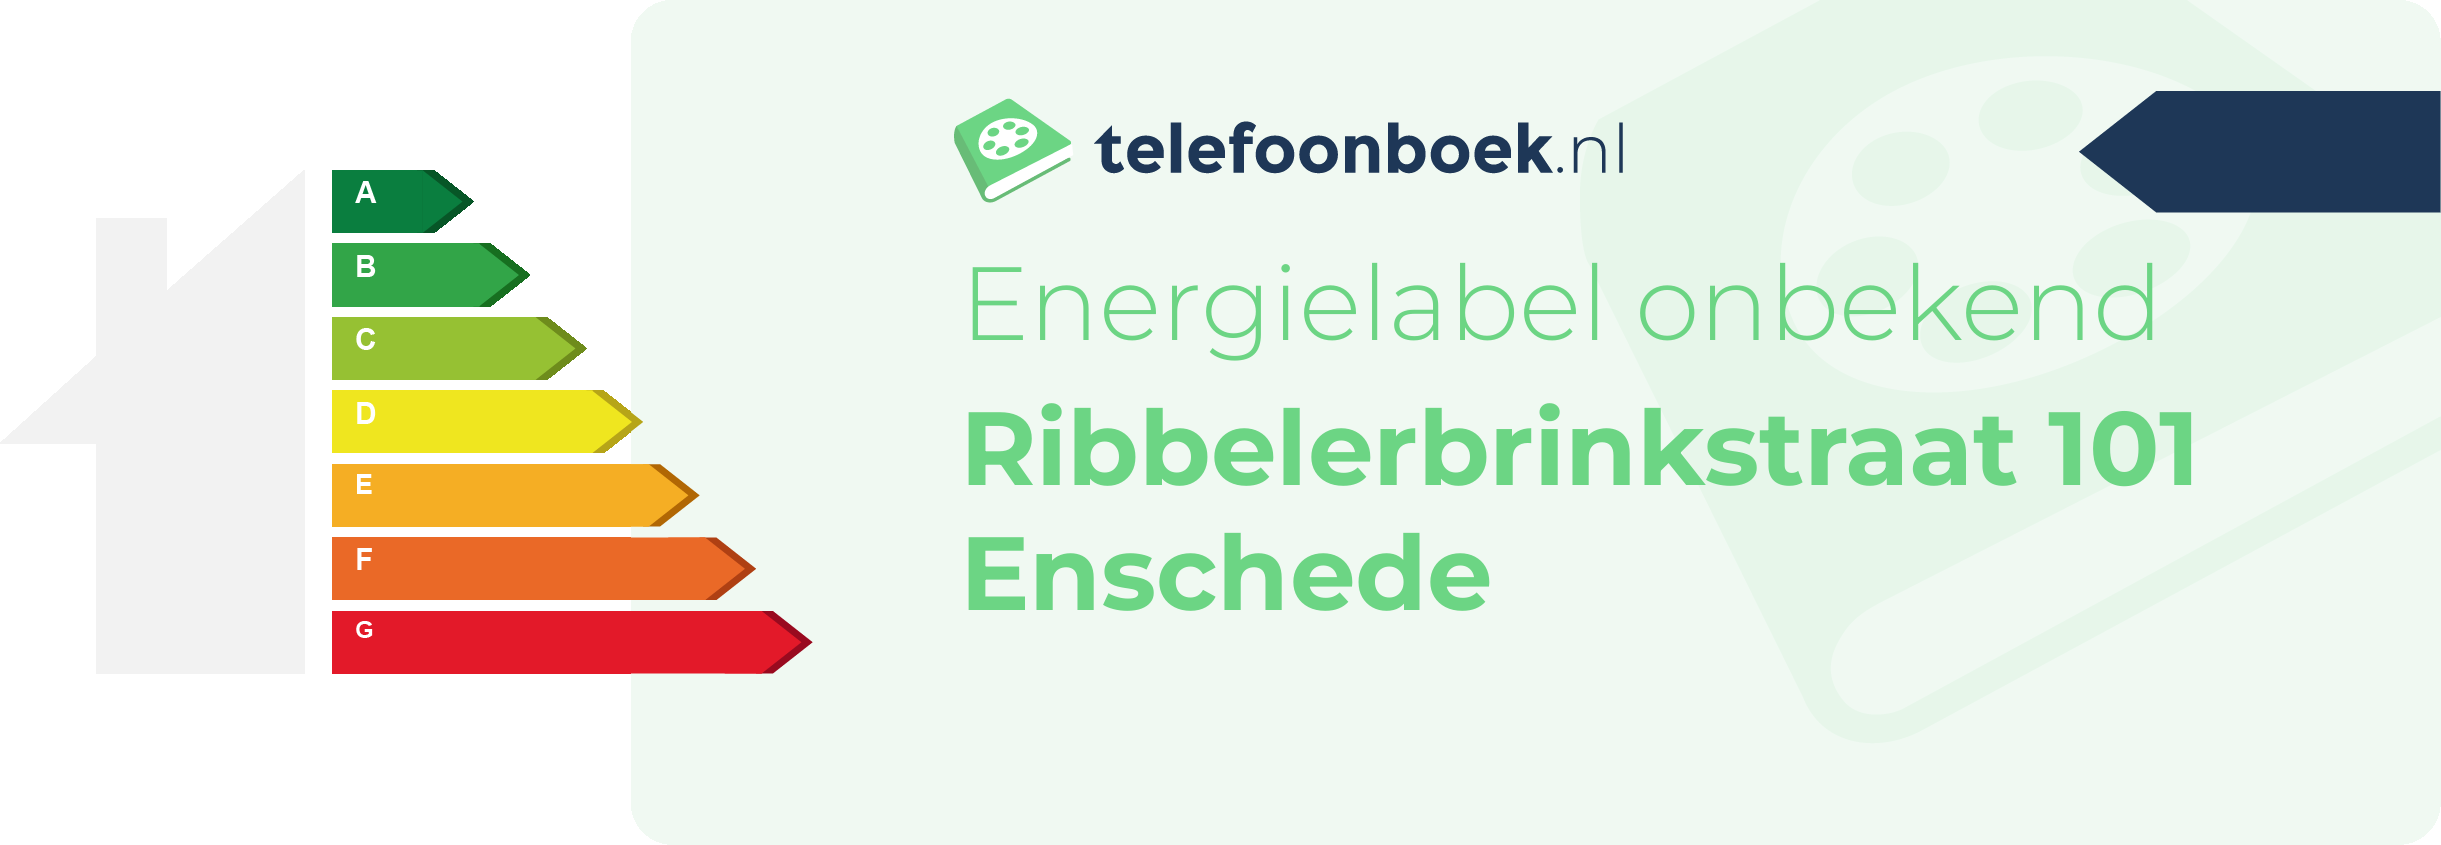 Energielabel Ribbelerbrinkstraat 101 Enschede